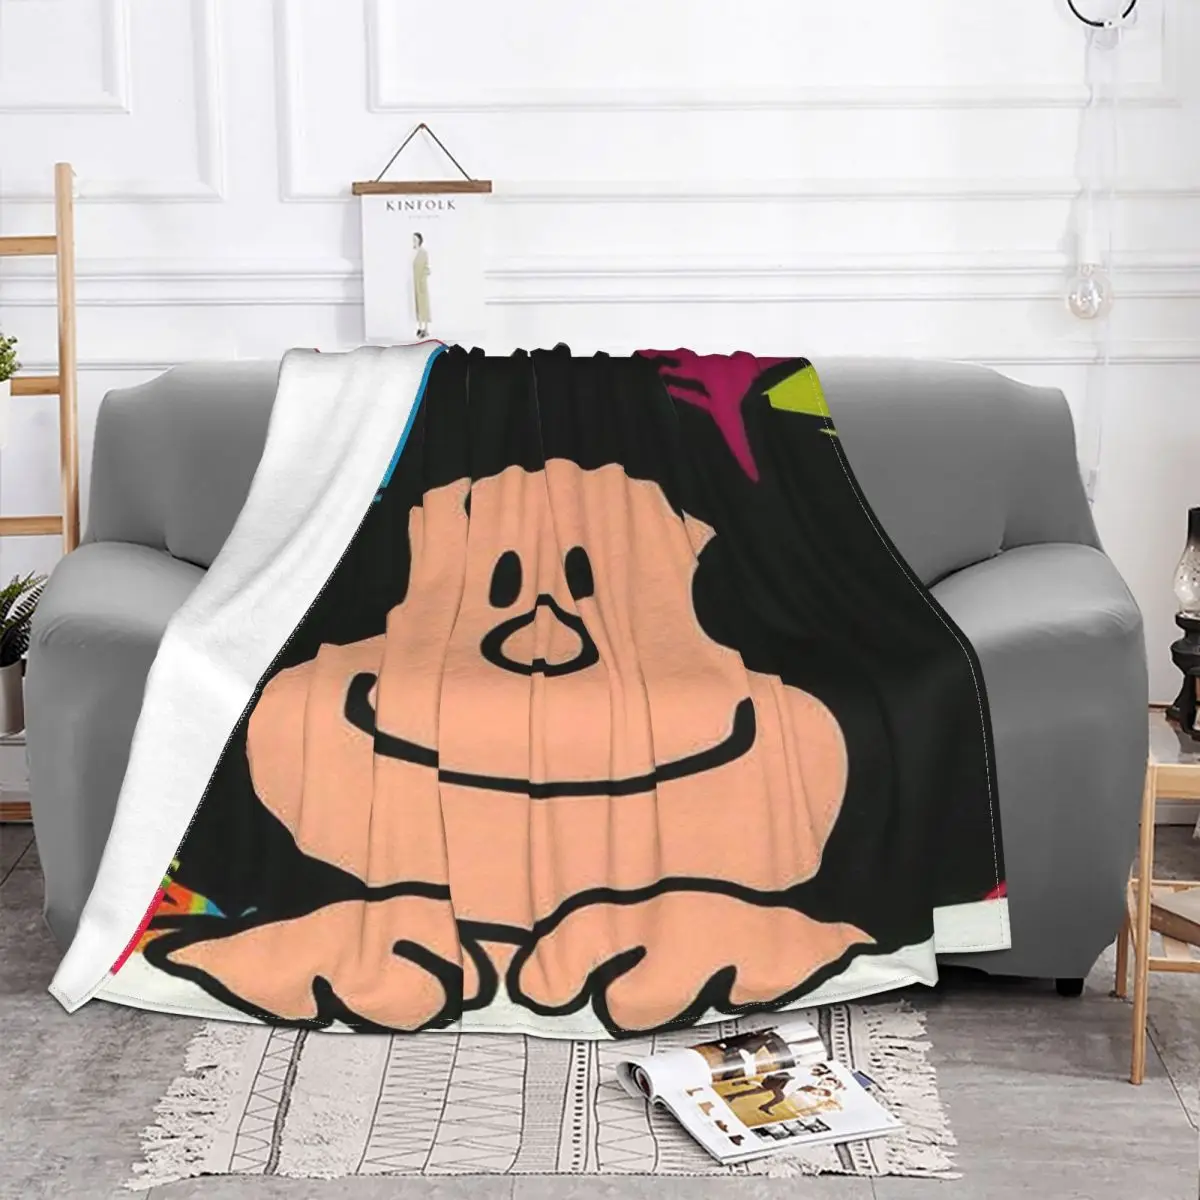 

Kawaii Мультфильм Mafalda одеяла анти пилинг фланель весна/осень портативный мягкий плед одеяло для дивана офиса покрывало